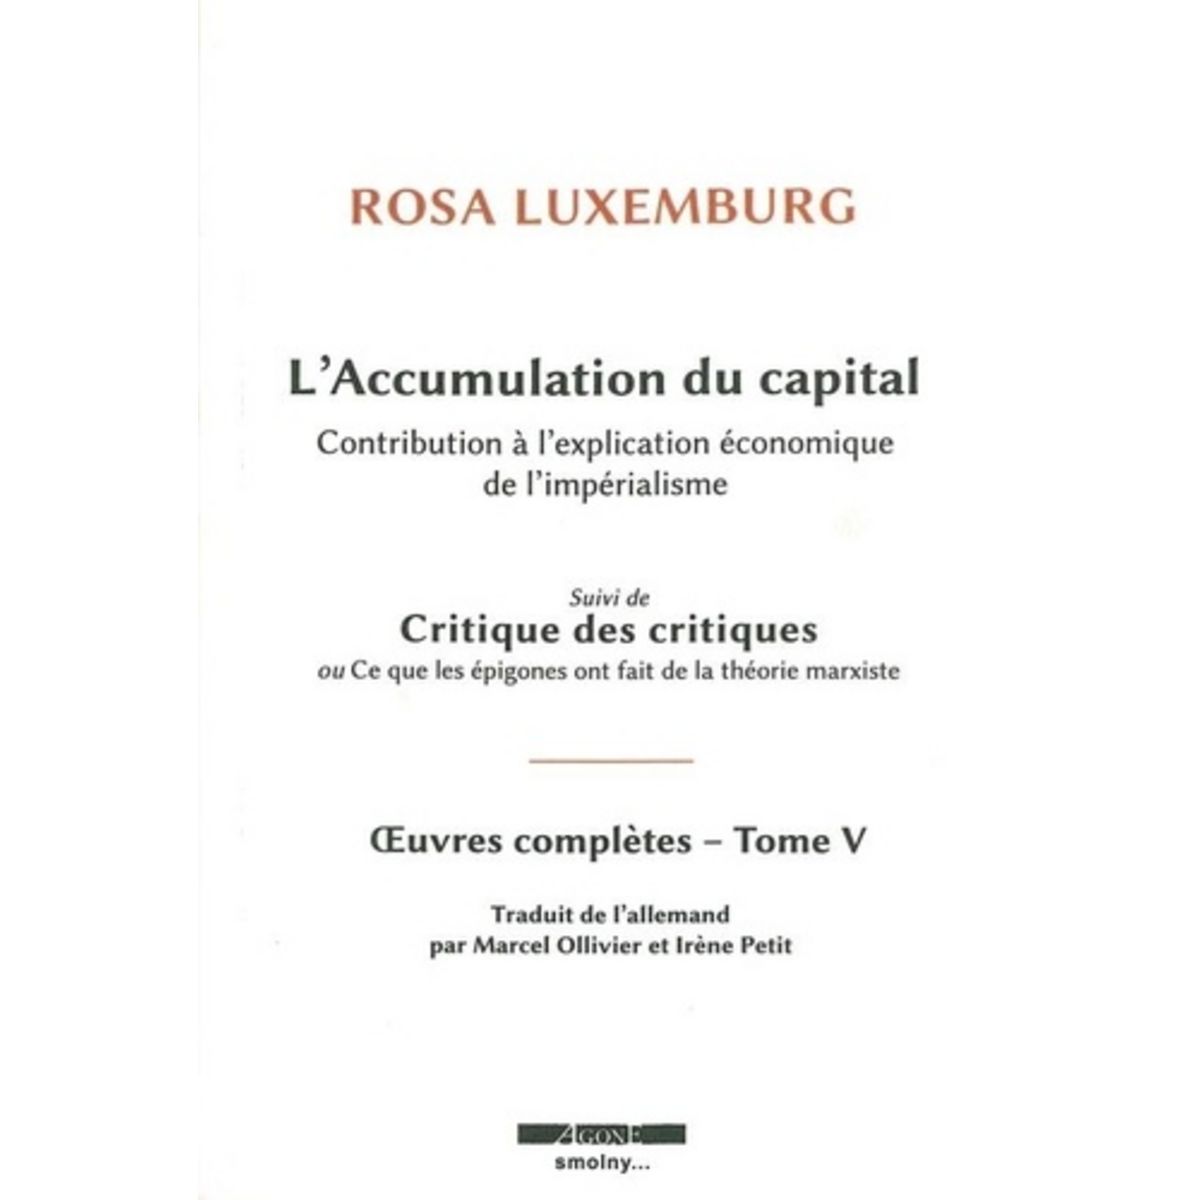  OEUVRES COMPLETES. TOME 5, L'ACCUMULATION DU CAPITAL : CONTRIBUTION A L'EXPLICATION ECONOMIQUE DE L'IMPERIALISME SUIVI DE CRITIQUE DES CRITIQUES OU CE QUE LES EPIGONES ONT FAIT DE LA THEORIE MARXISTE, Luxemburg Rosa